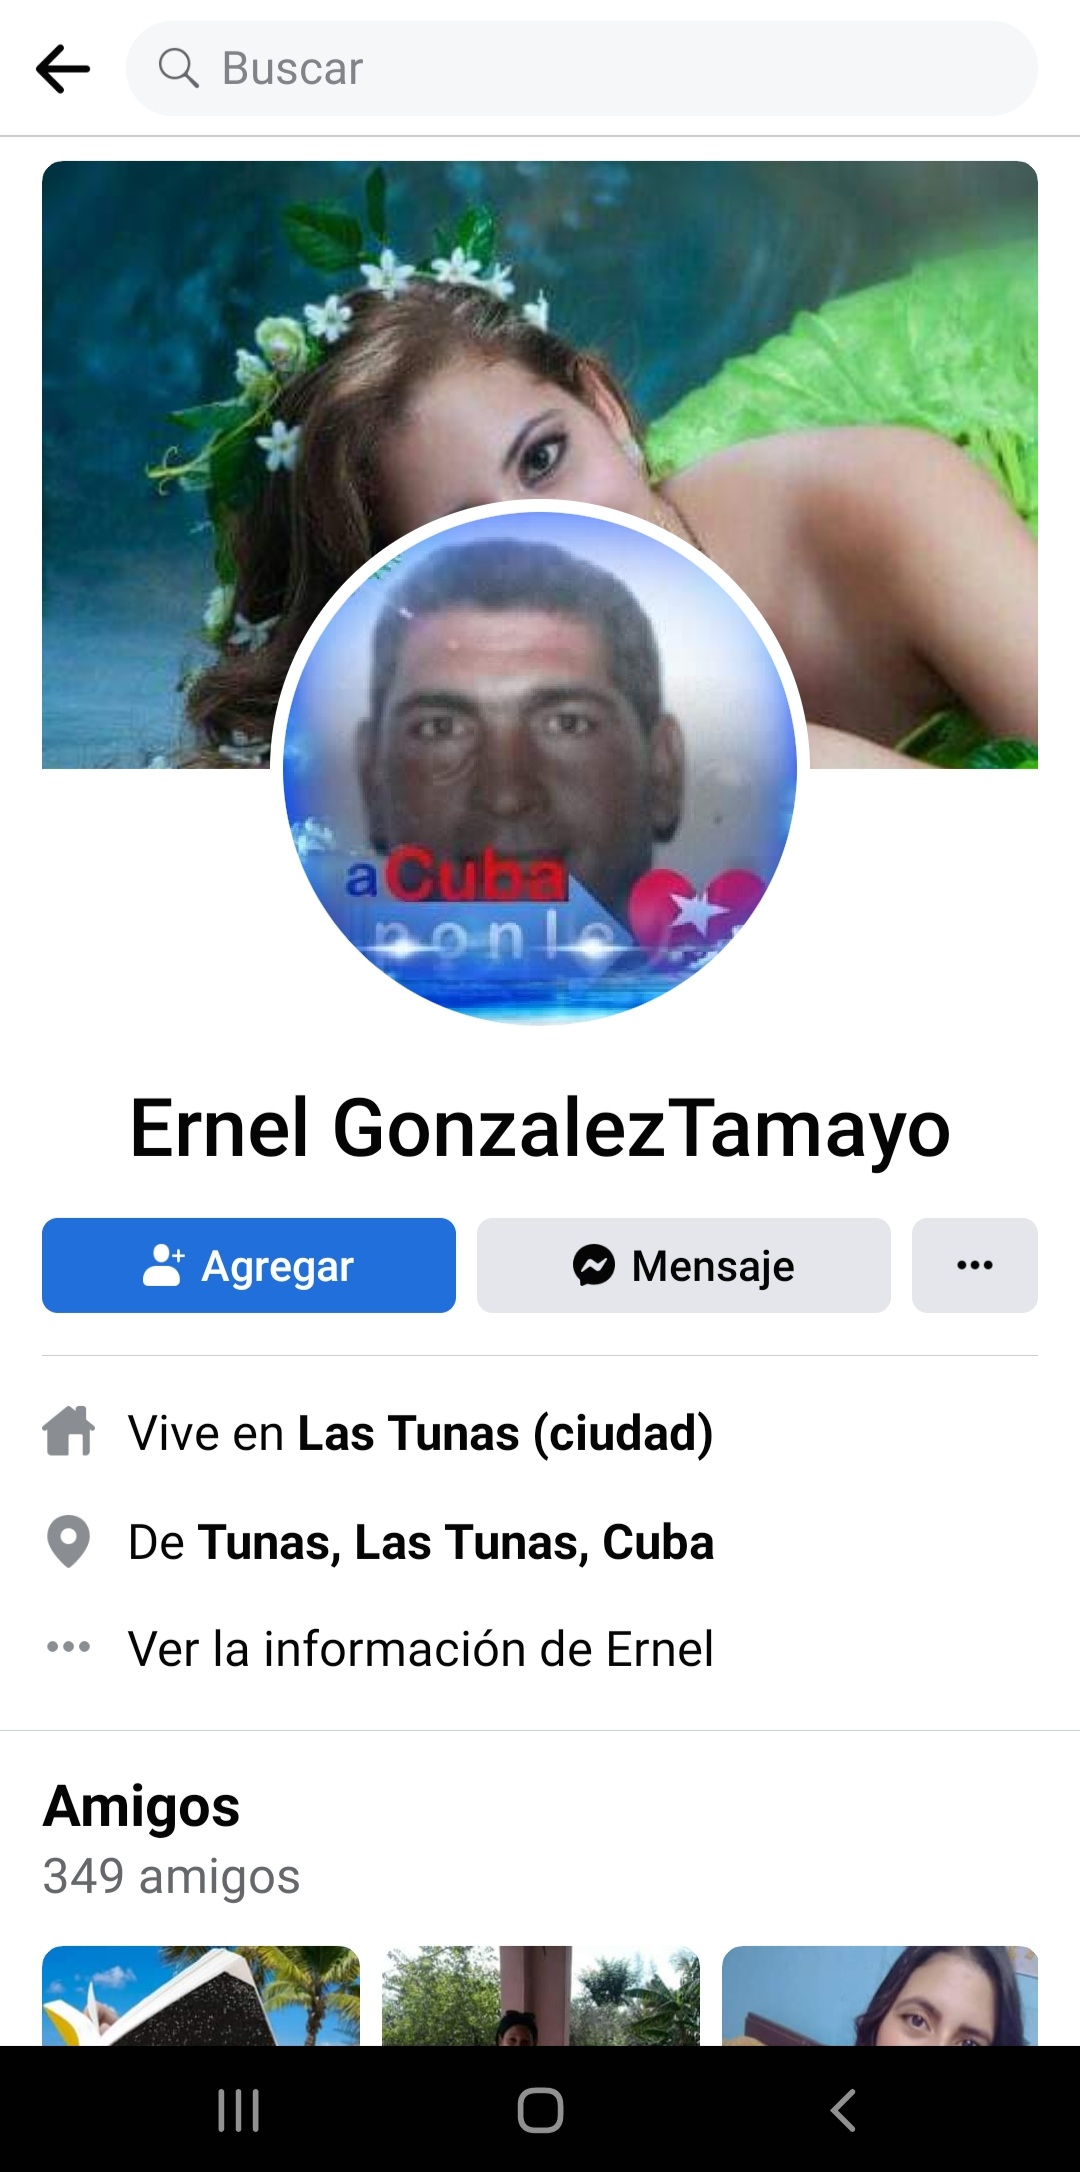 Ernel Gonzales Tamayo